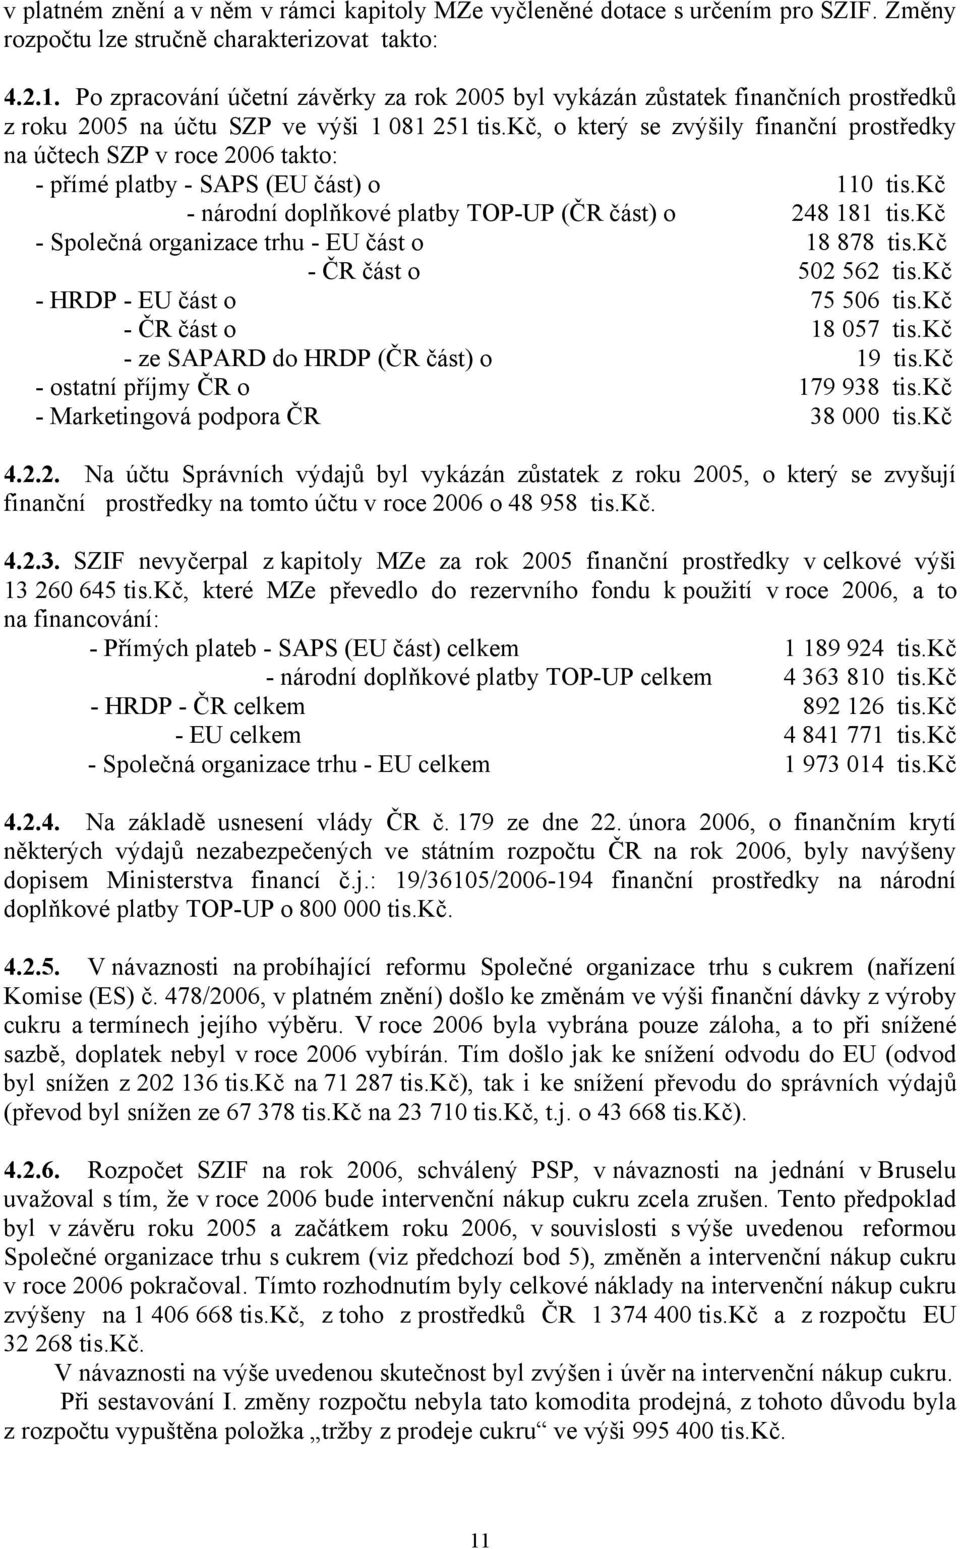 kč, o který se zvýšily finanční prostředky na účtech SZP v roce 2006 takto: - přímé platby - SAPS (EU část) o 110 tis.kč - národní doplňkové platby TOP-UP (ČR část) o 248 181 tis.